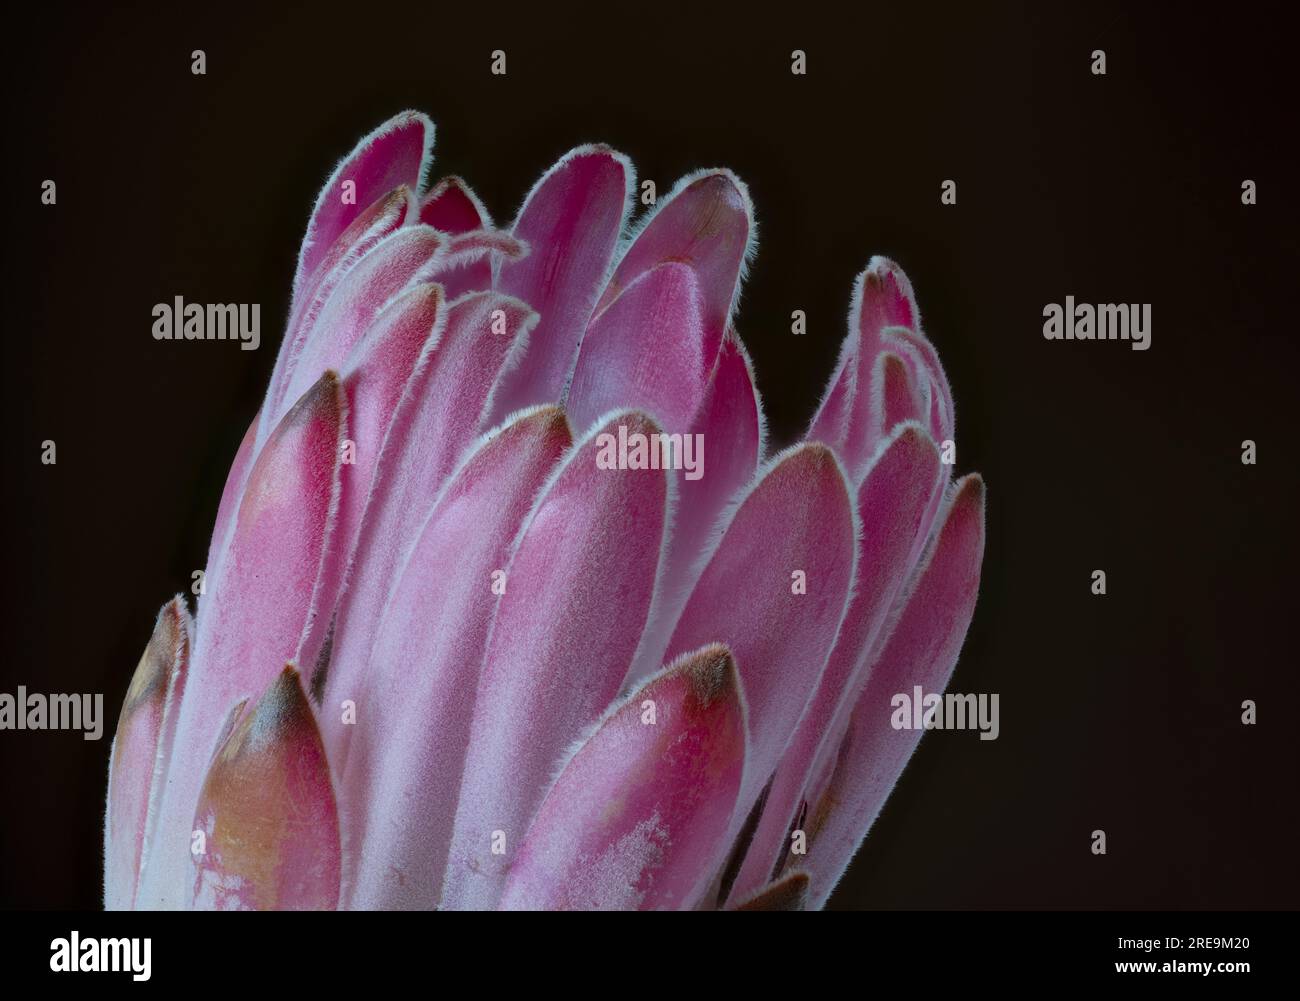 Une fleur spectaculaire et très inhabituelle d'une plante Protea, (Protea aristata), photographiée sur un fond noir Uni Banque D'Images